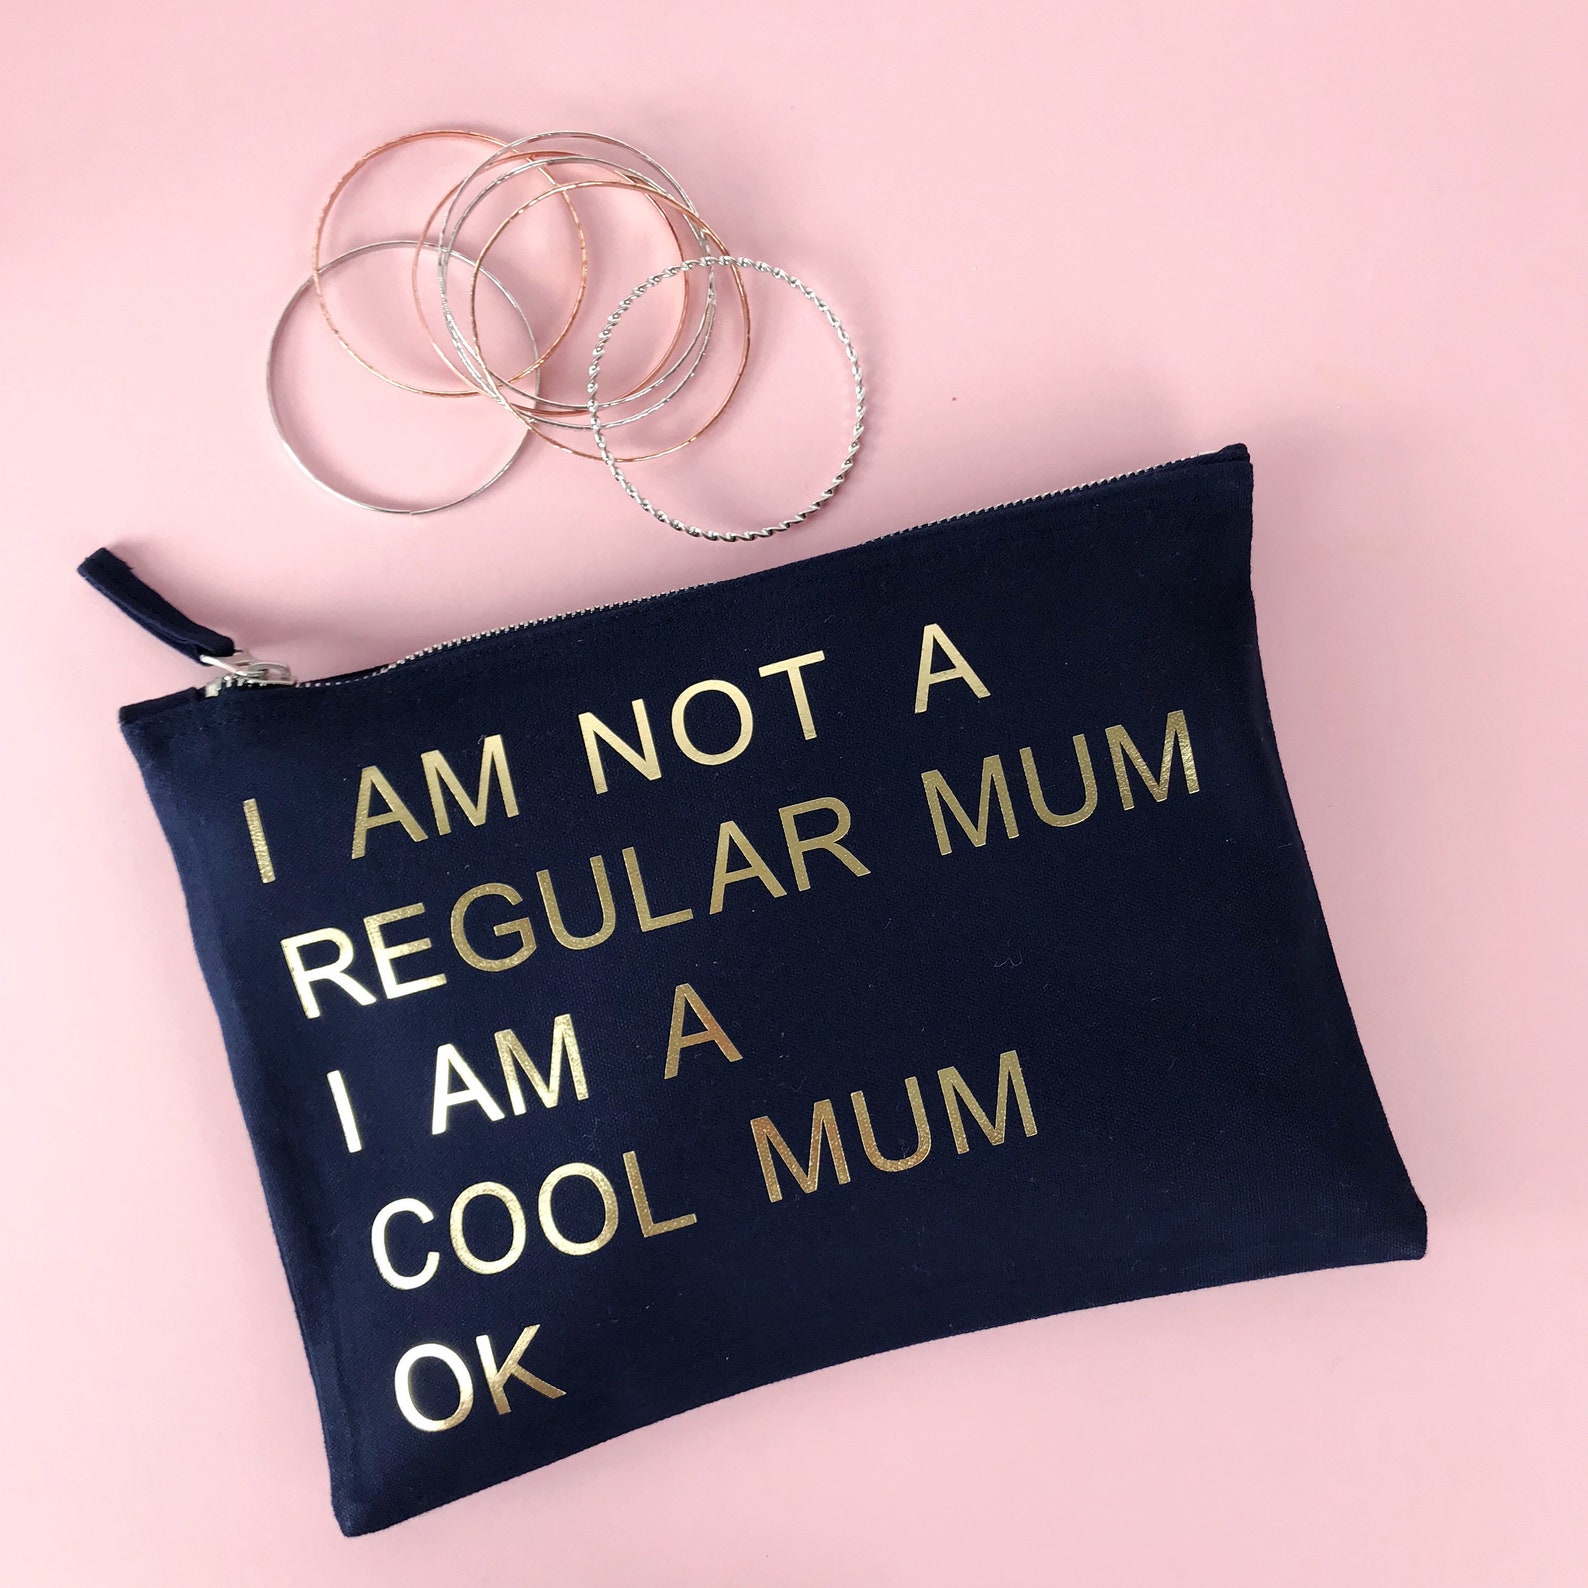 My mum made it. My mum made it сумка. My mum made it Bag. My mum made it сумка купить. My mum made it одежда сумка купить.